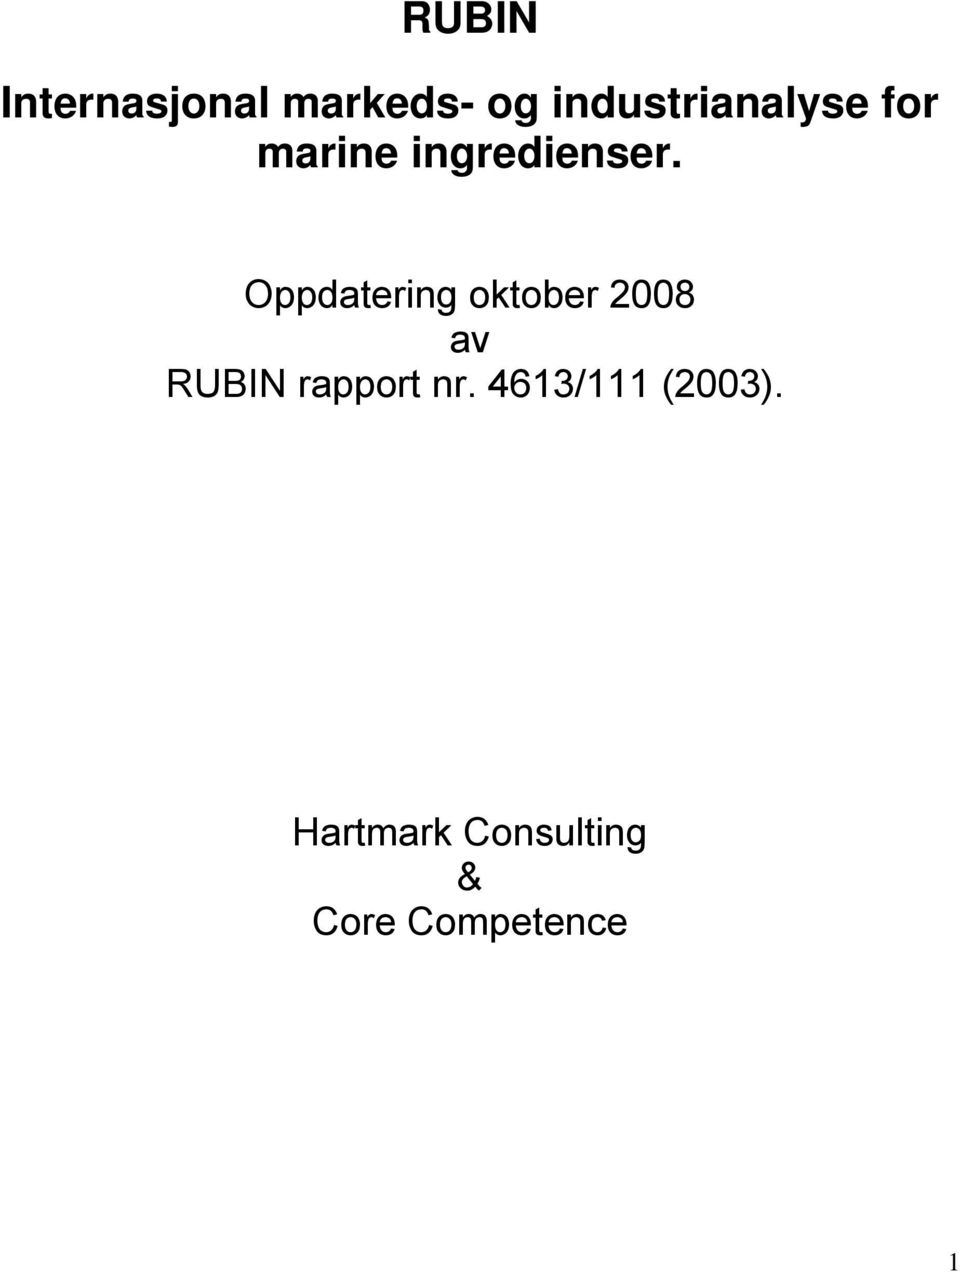 Oppdatering oktober 2008 av RUBIN rapport